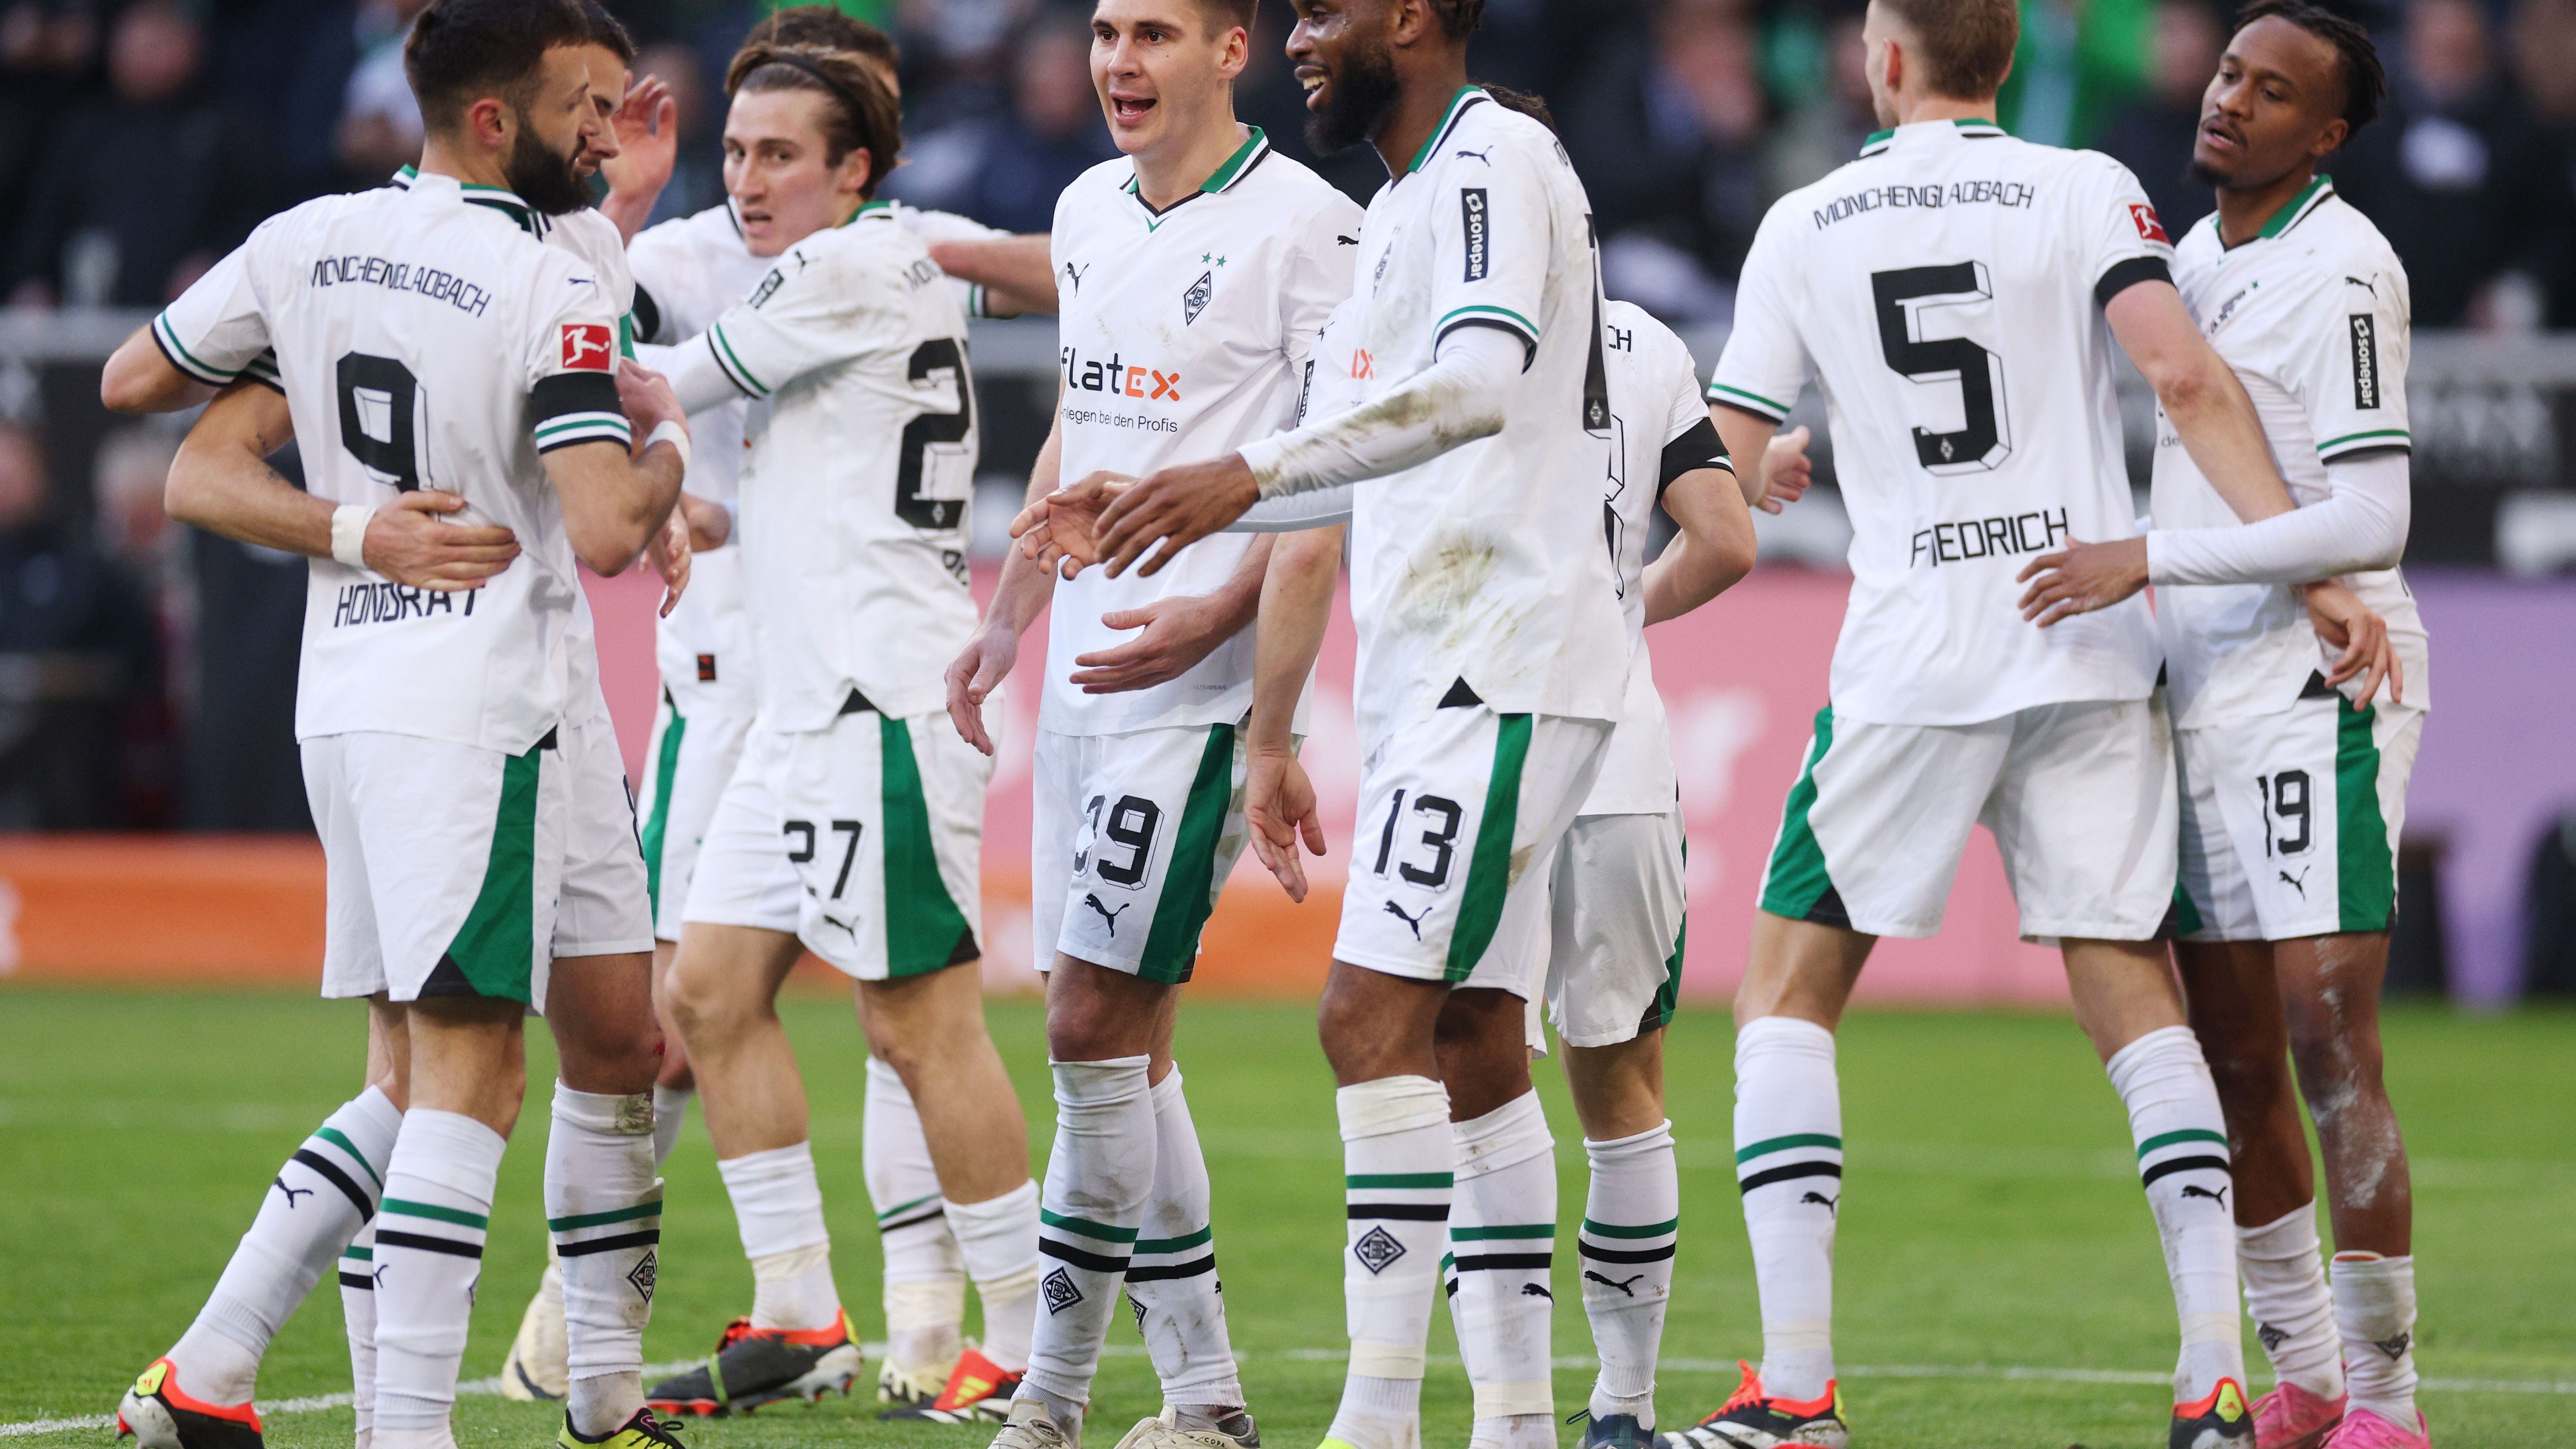 <strong>Borussia Mönchengladbach</strong><br>Aktuelle Platzierung: 11.<br>Mögliche Platzierungen: 6. - 18.&nbsp;<br>Restprogramm: Dortmund, Hoffenheim, Berlin, Bremen, Frankfurt, Gladbach